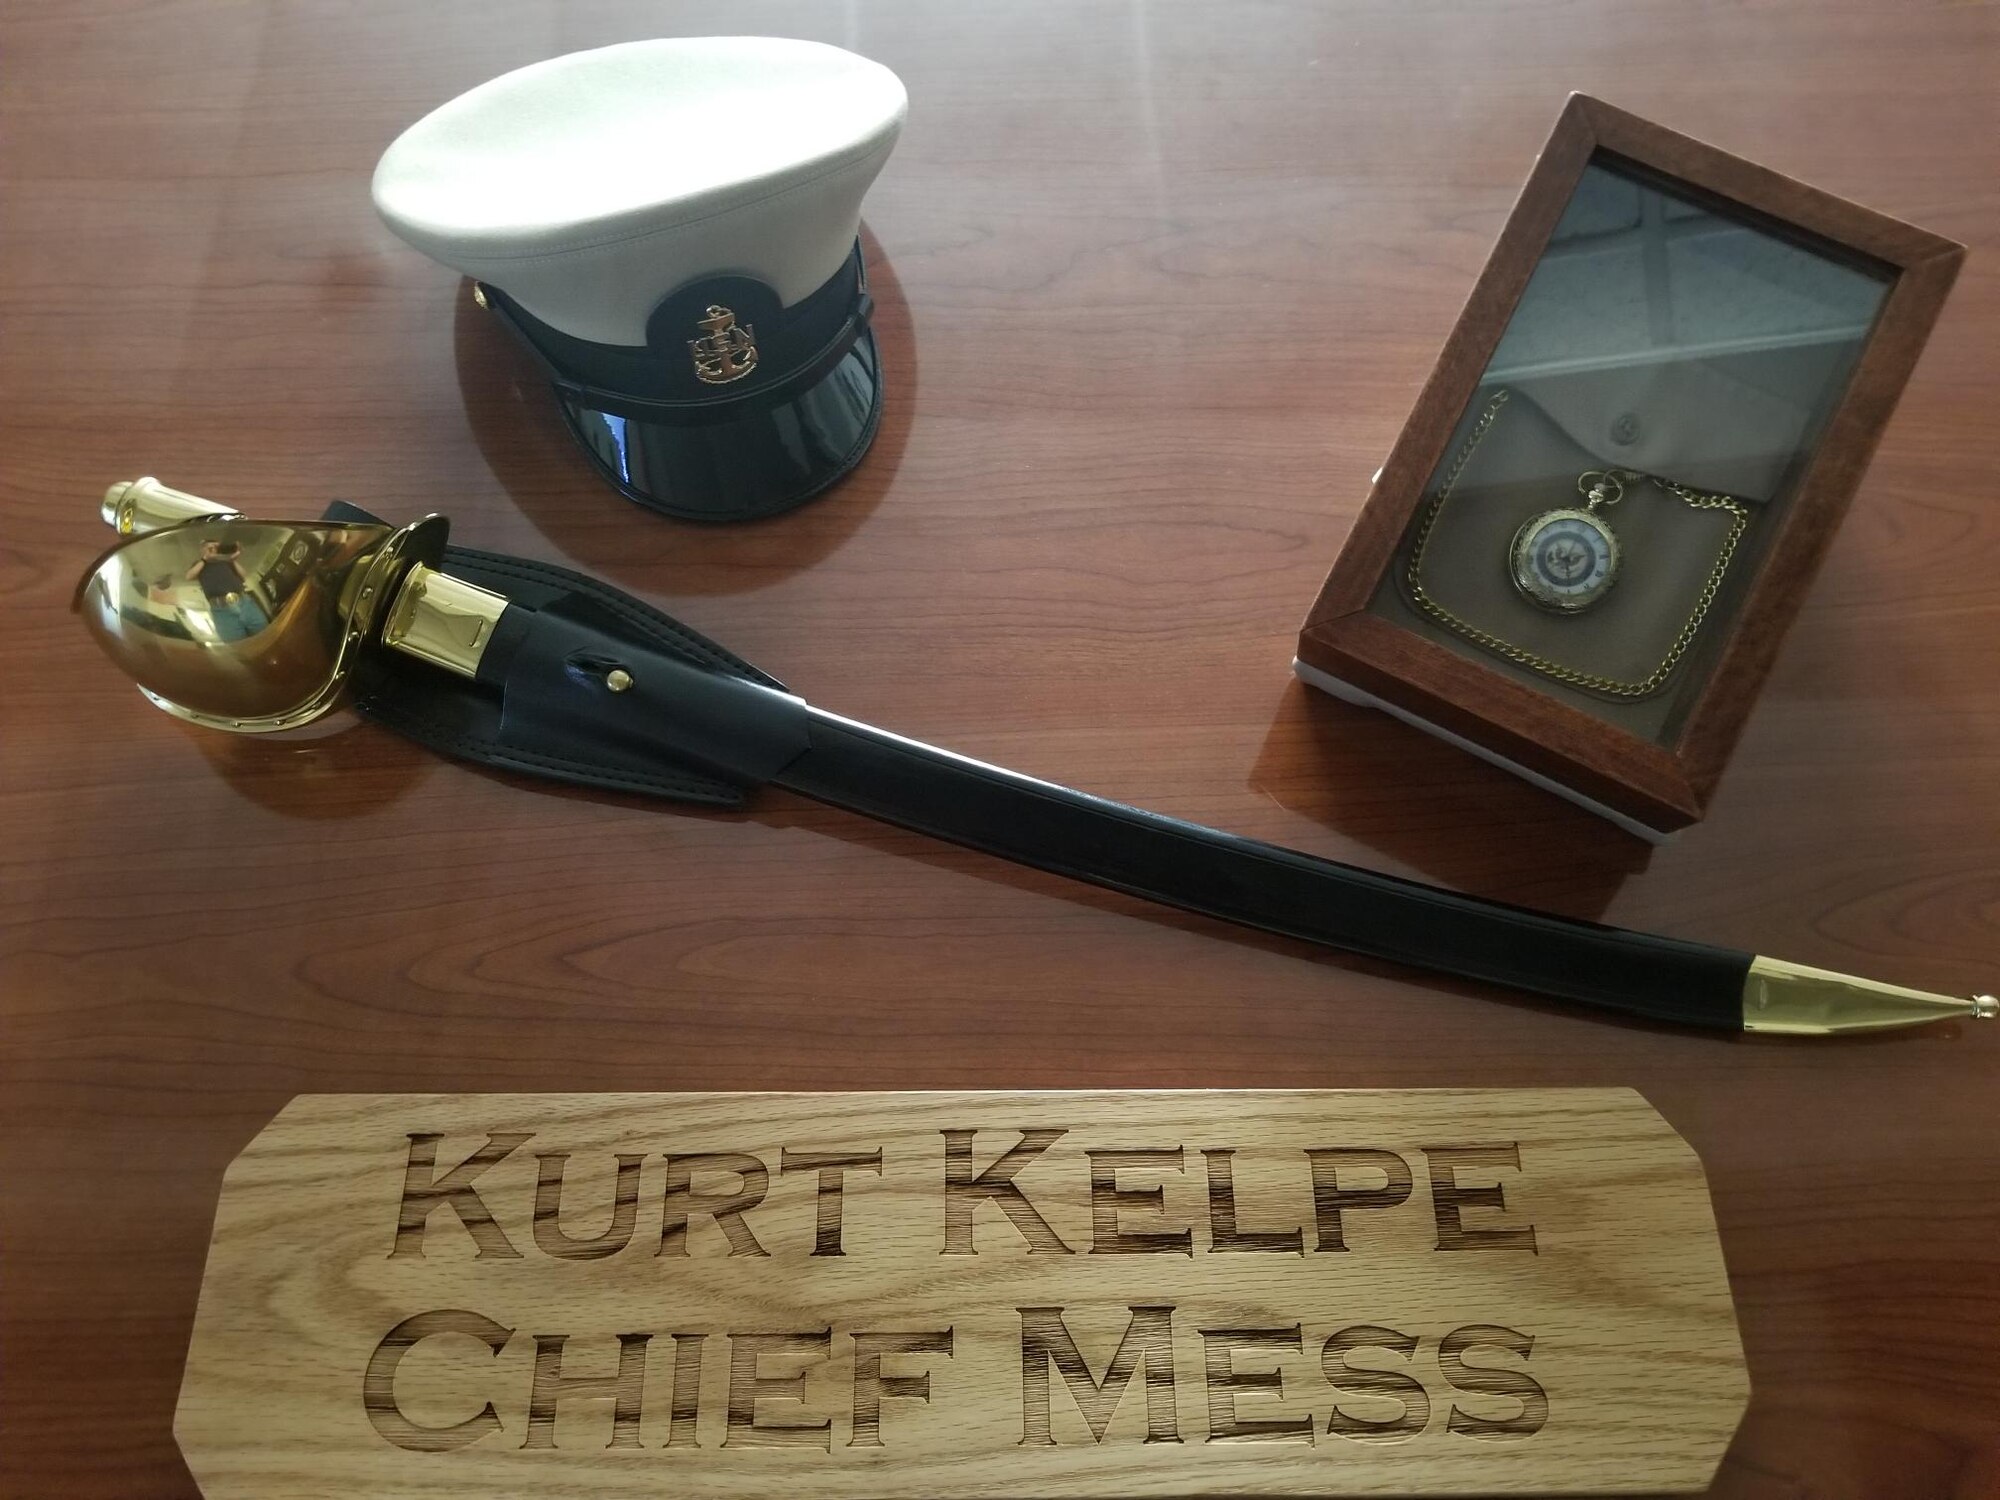 Kurt Kelpe Chief's Mess